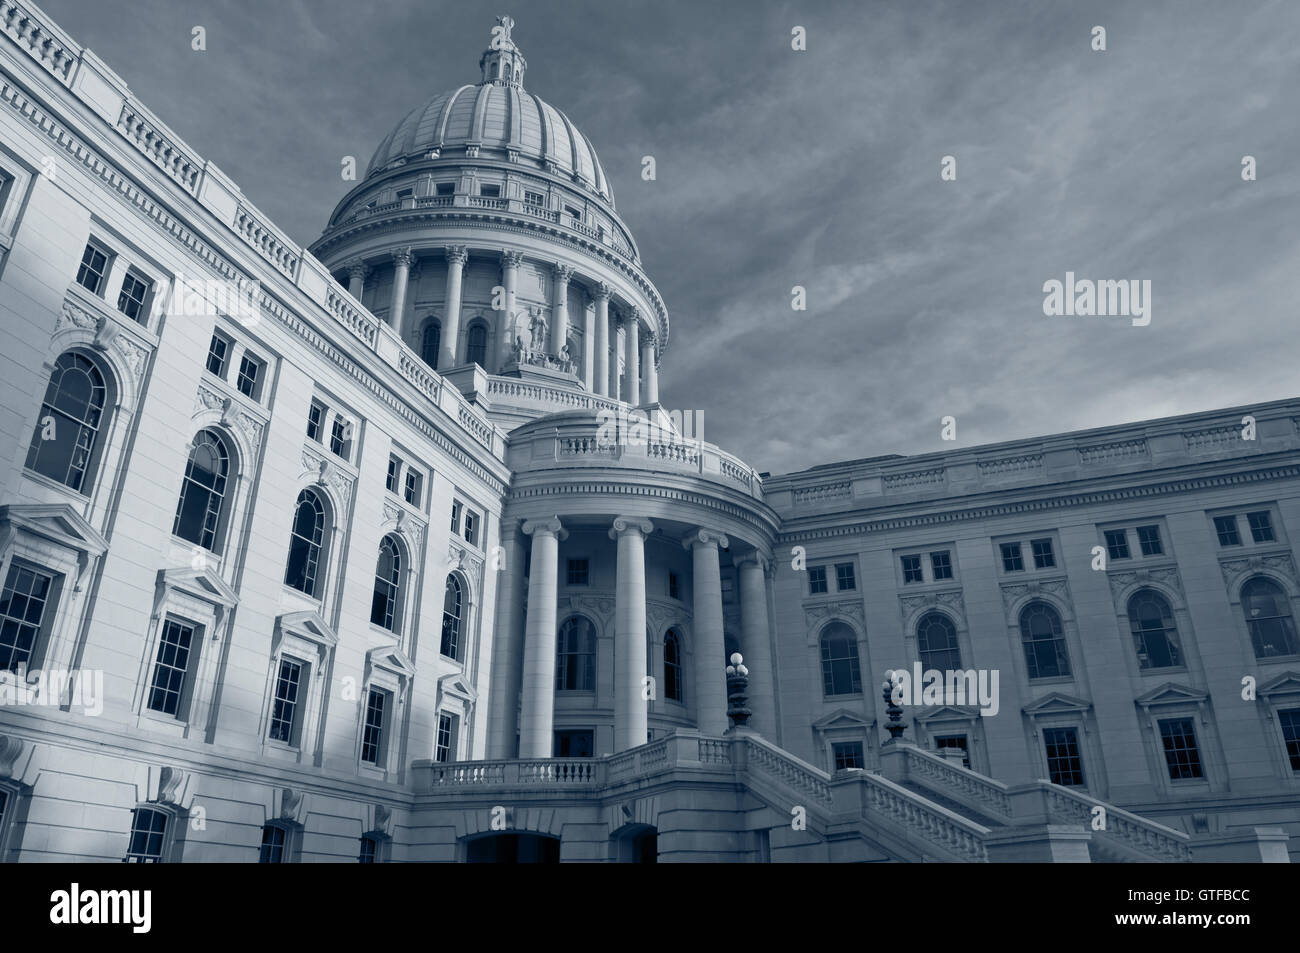 Kapitol Gebäude, Madison. Bild des State Capitol Gebäude in Madison, Wisconsin, USA. Stockfoto